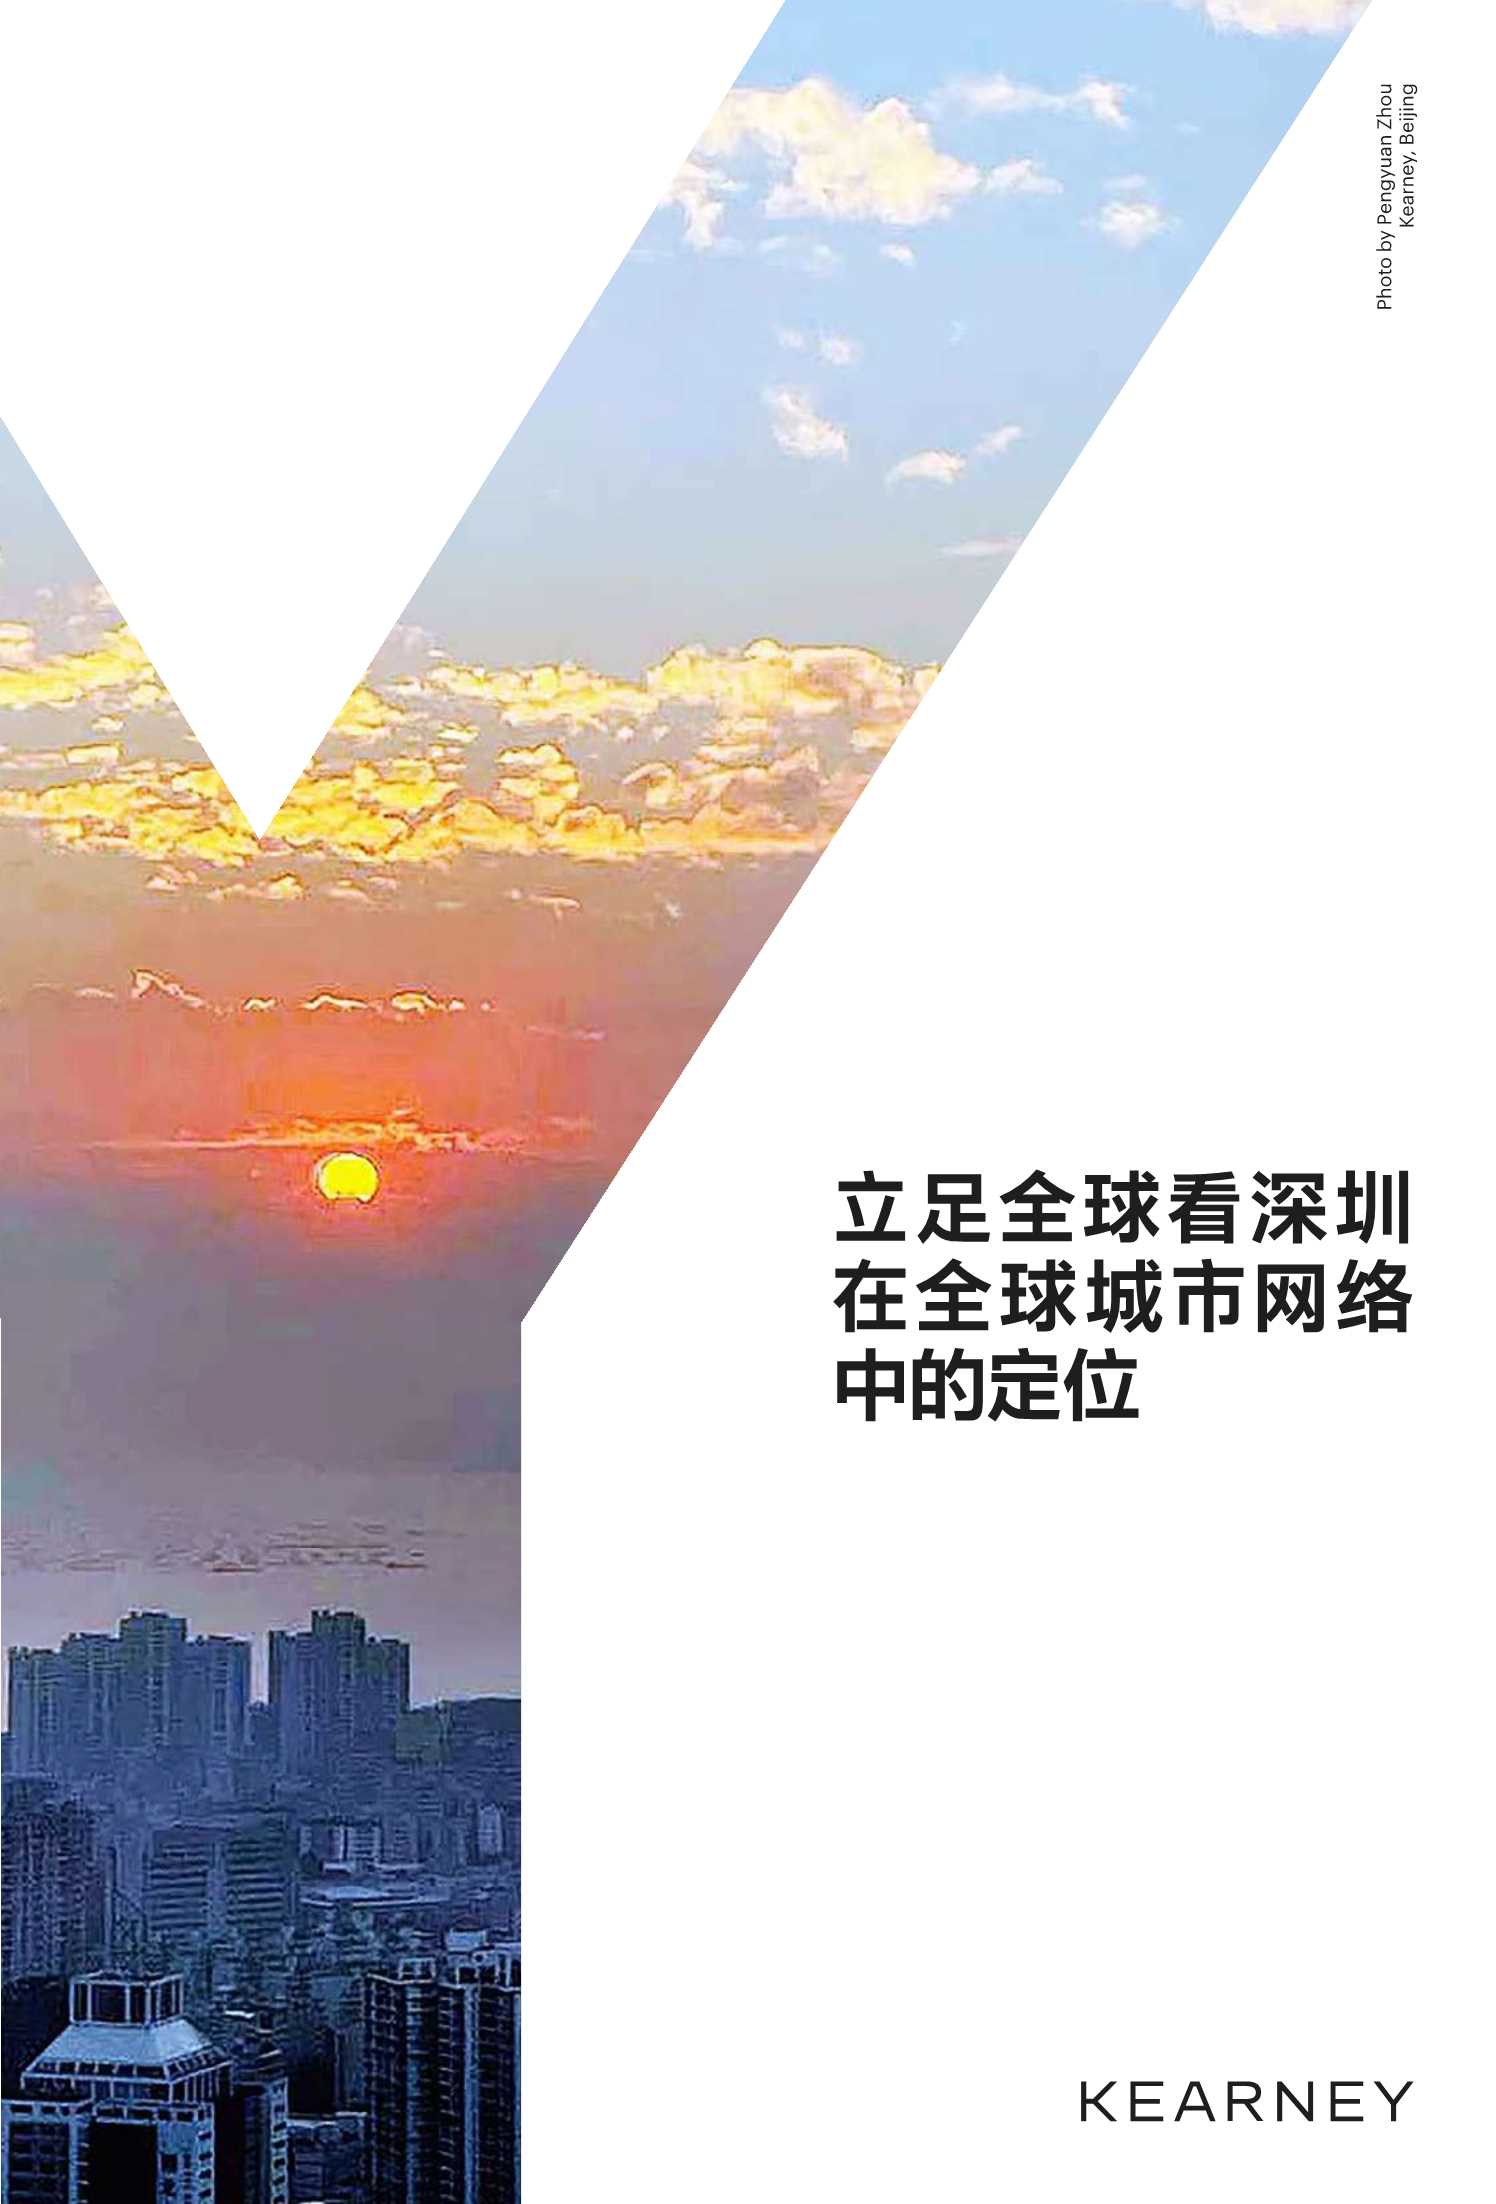 立足全球看深圳在全球城市网络中的定位-2022.05-17页